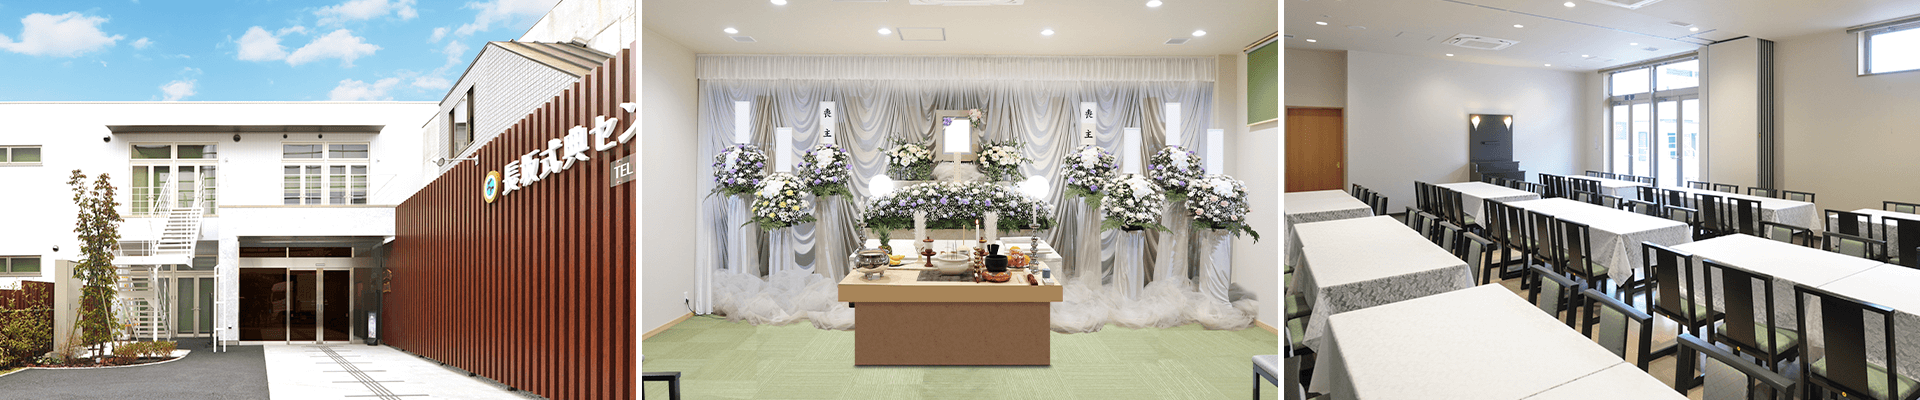 葬儀・葬式・家族葬なら16.5万円からできる長坂式典センター 青梅市の葬儀場一覧